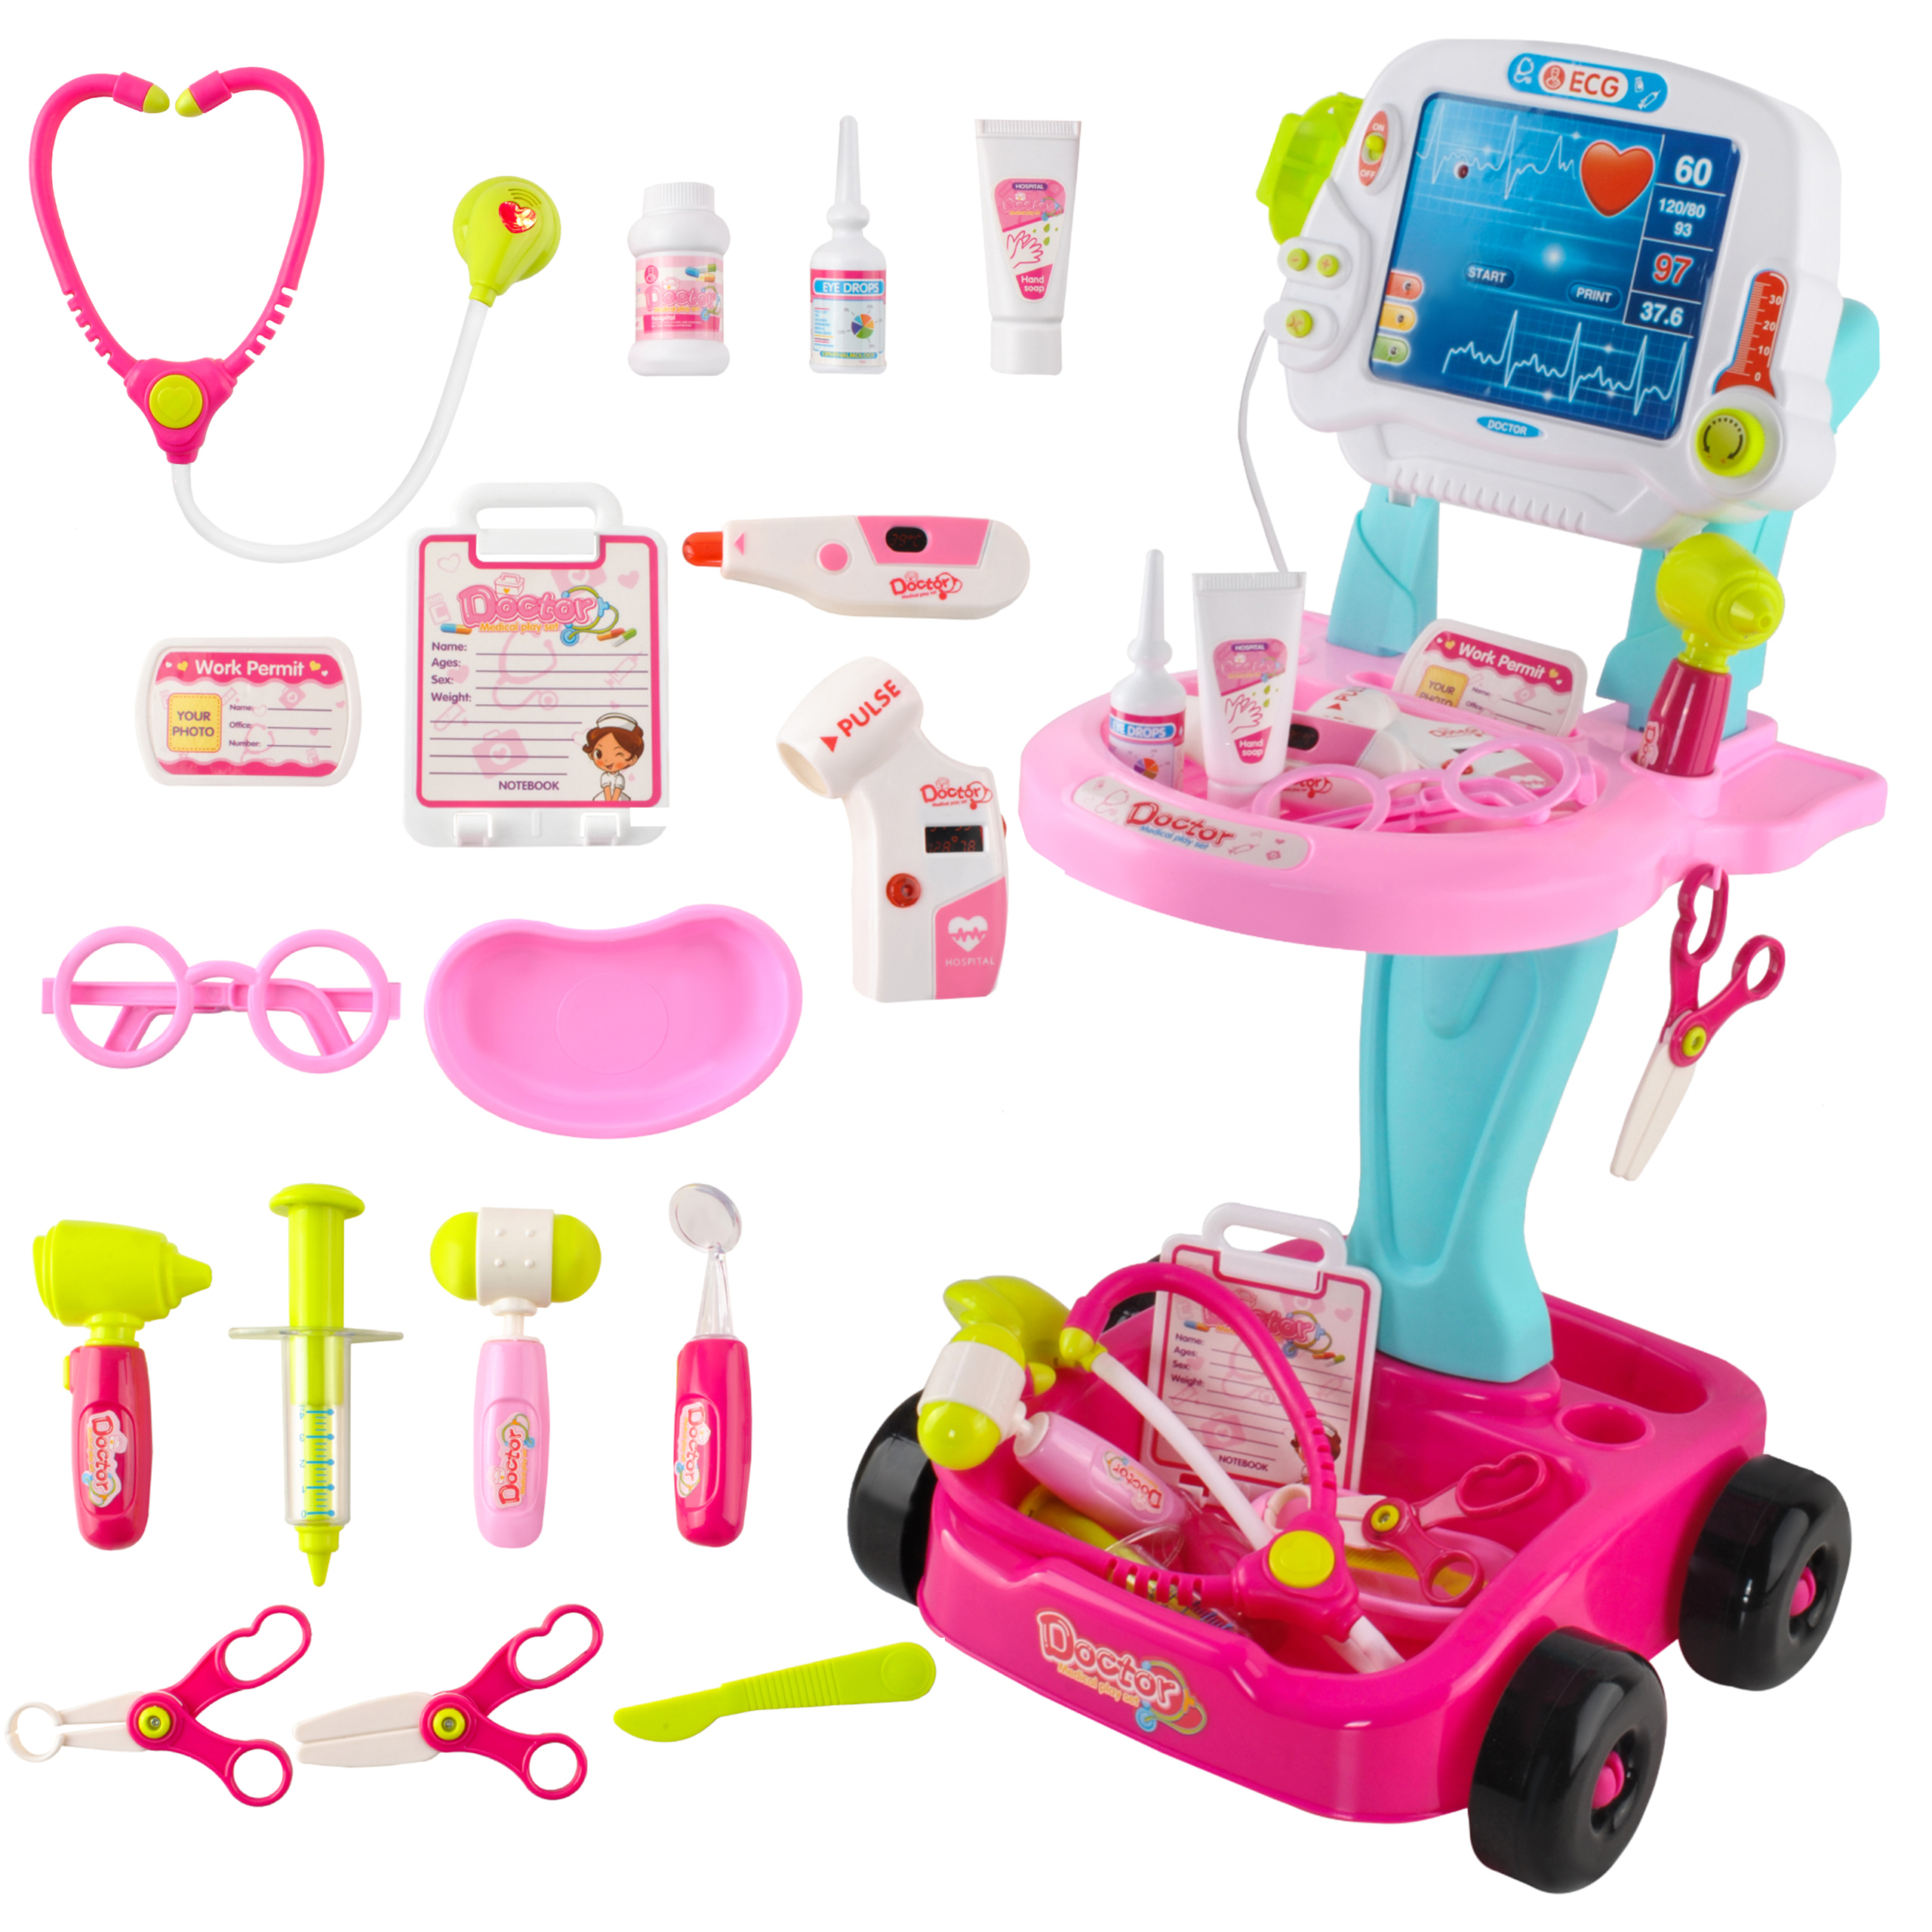 Kinder Simulation Medizinprodukt Koffer Kind Pretend Play Doktor Toy Gift #